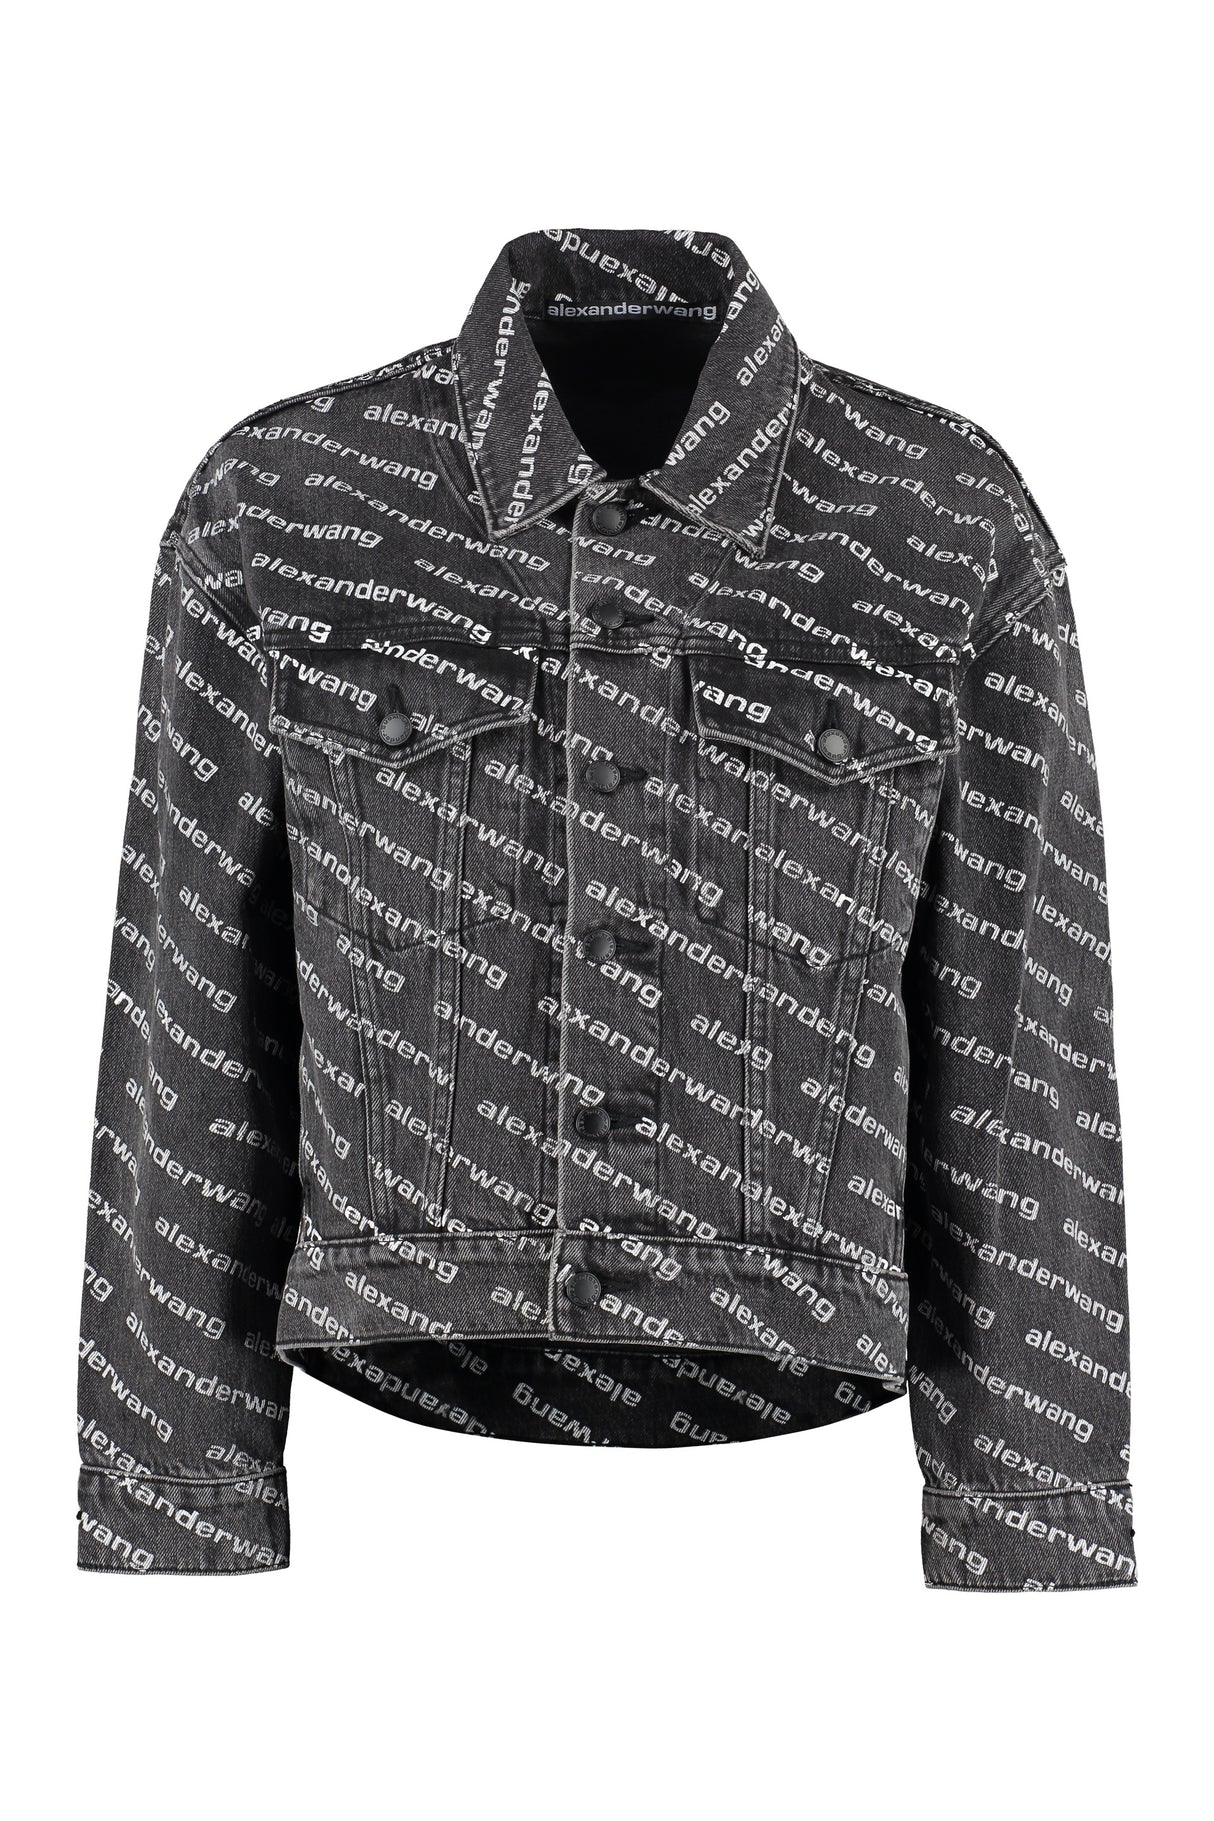 全面ロゴプリントのデニムジャケット - クラシックカラー、綿100%